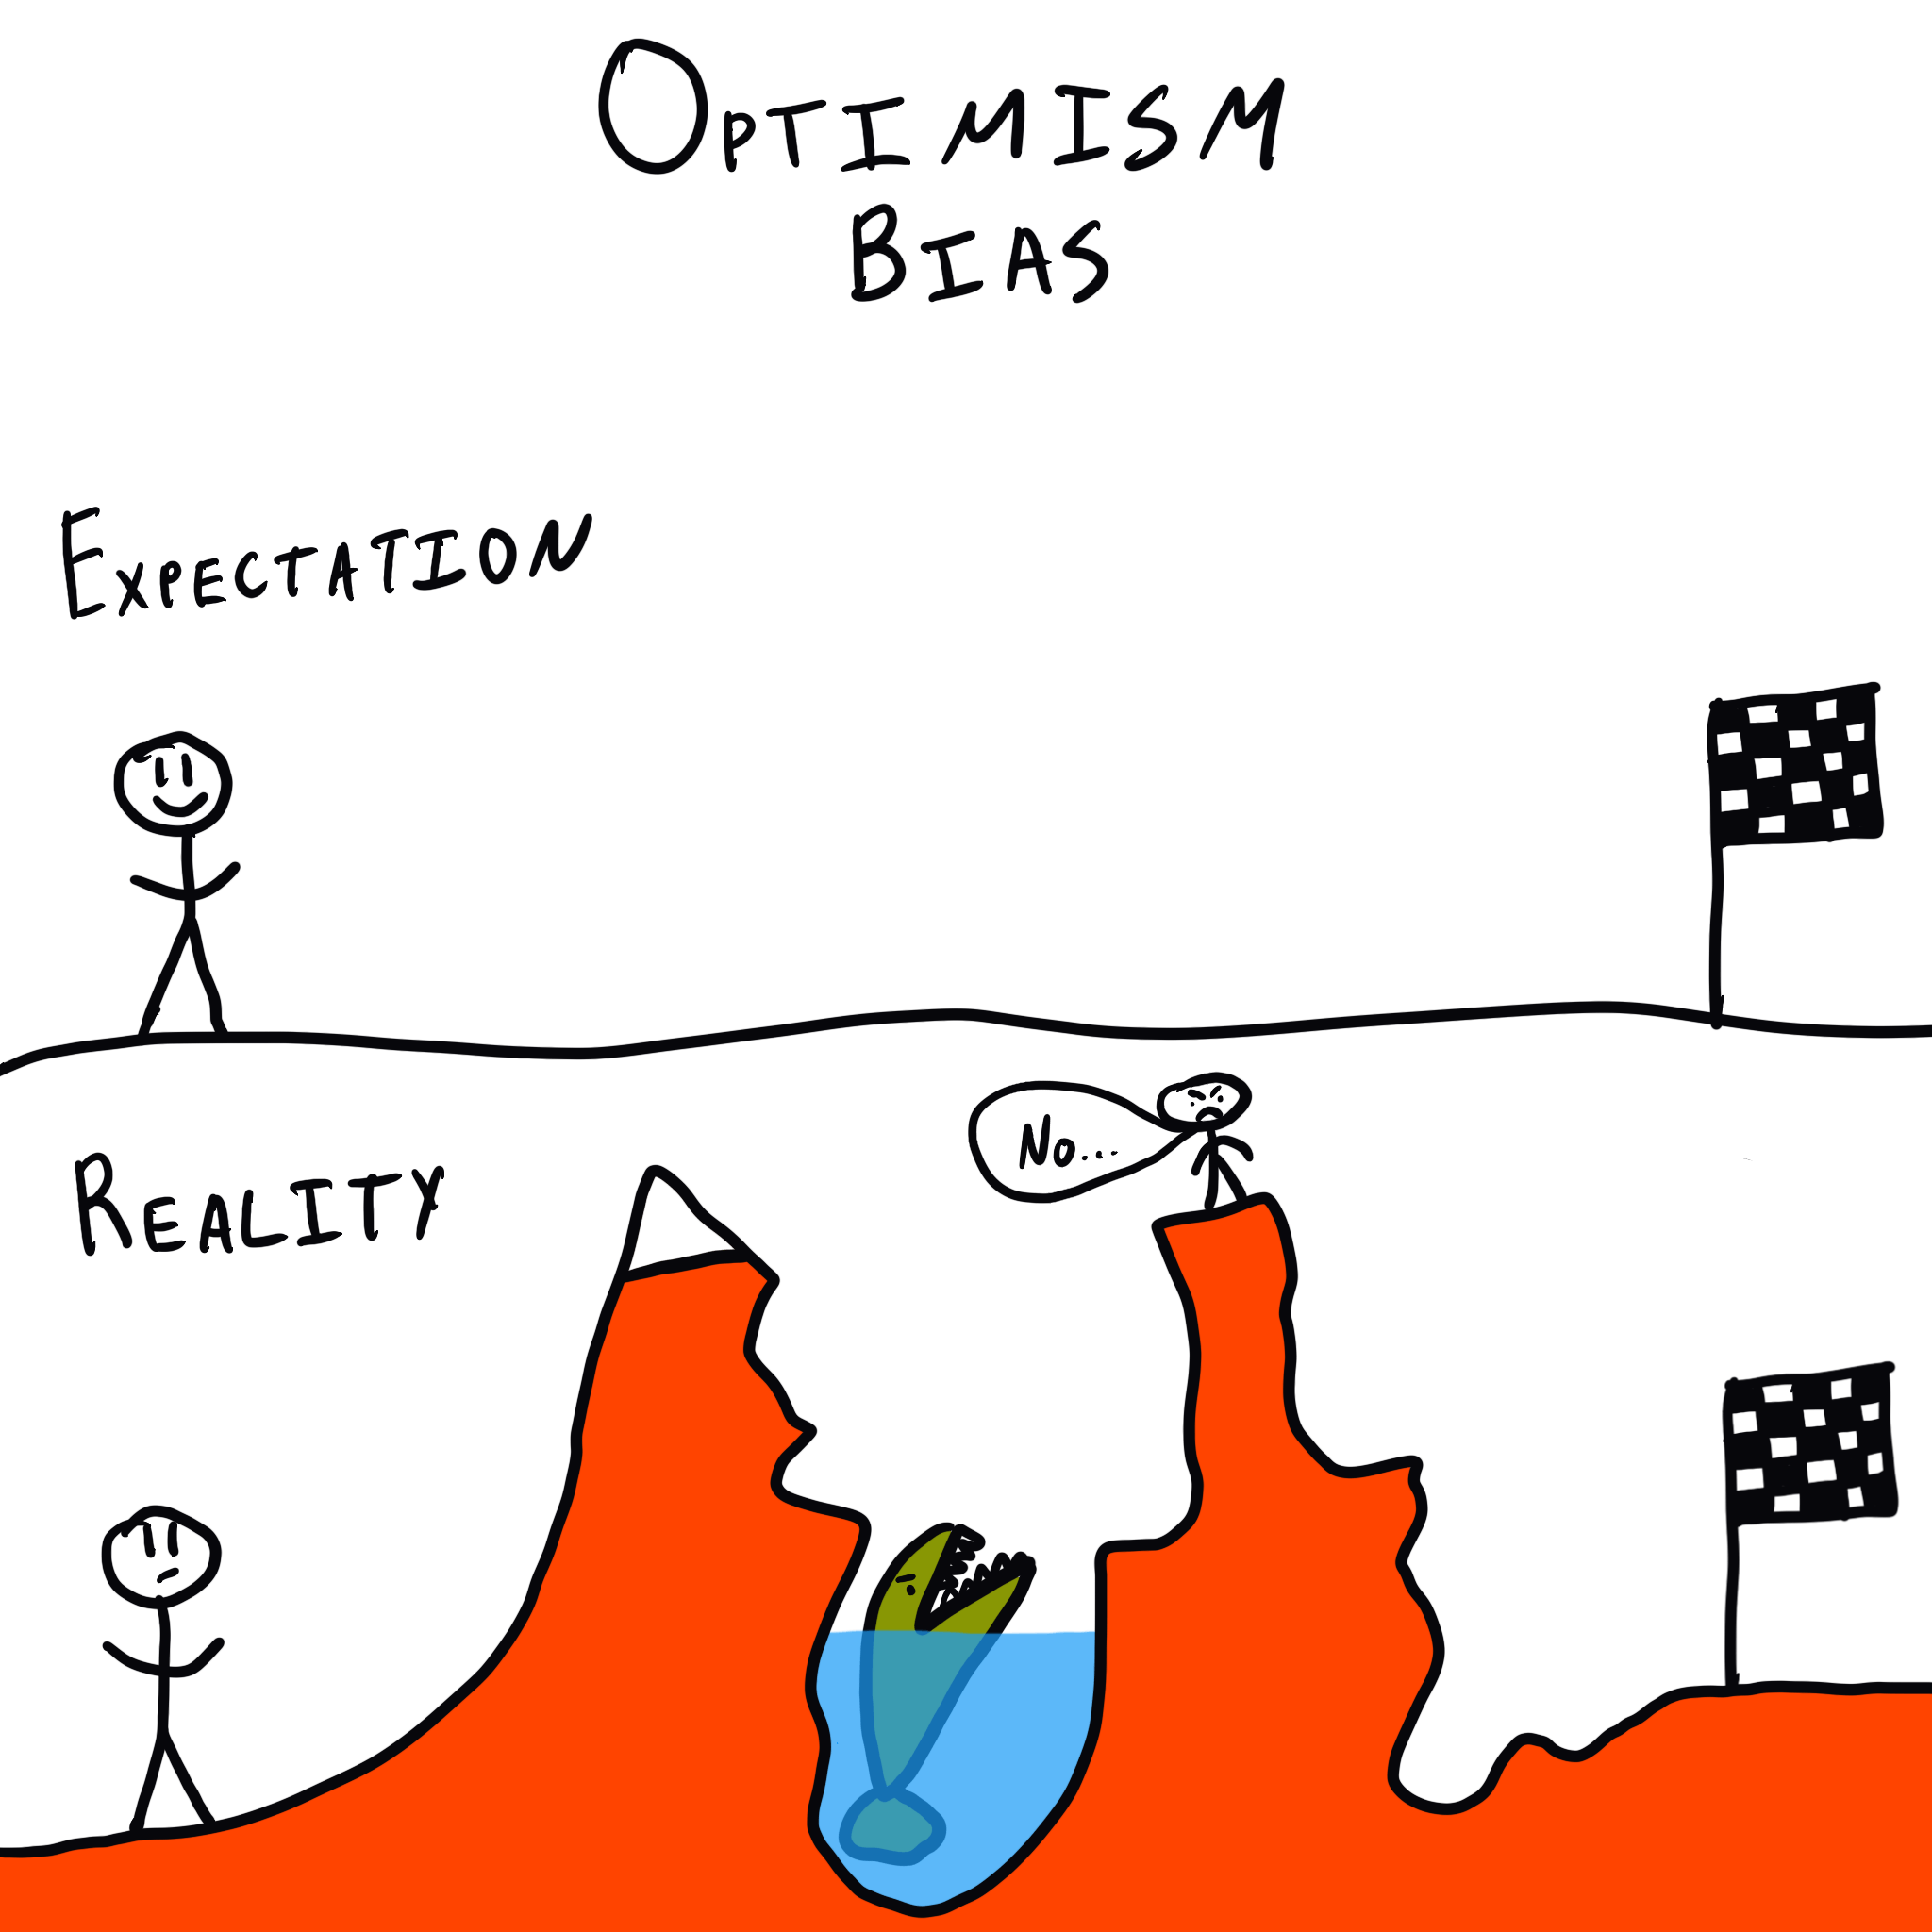 Endowment Effect - The Decision Lab